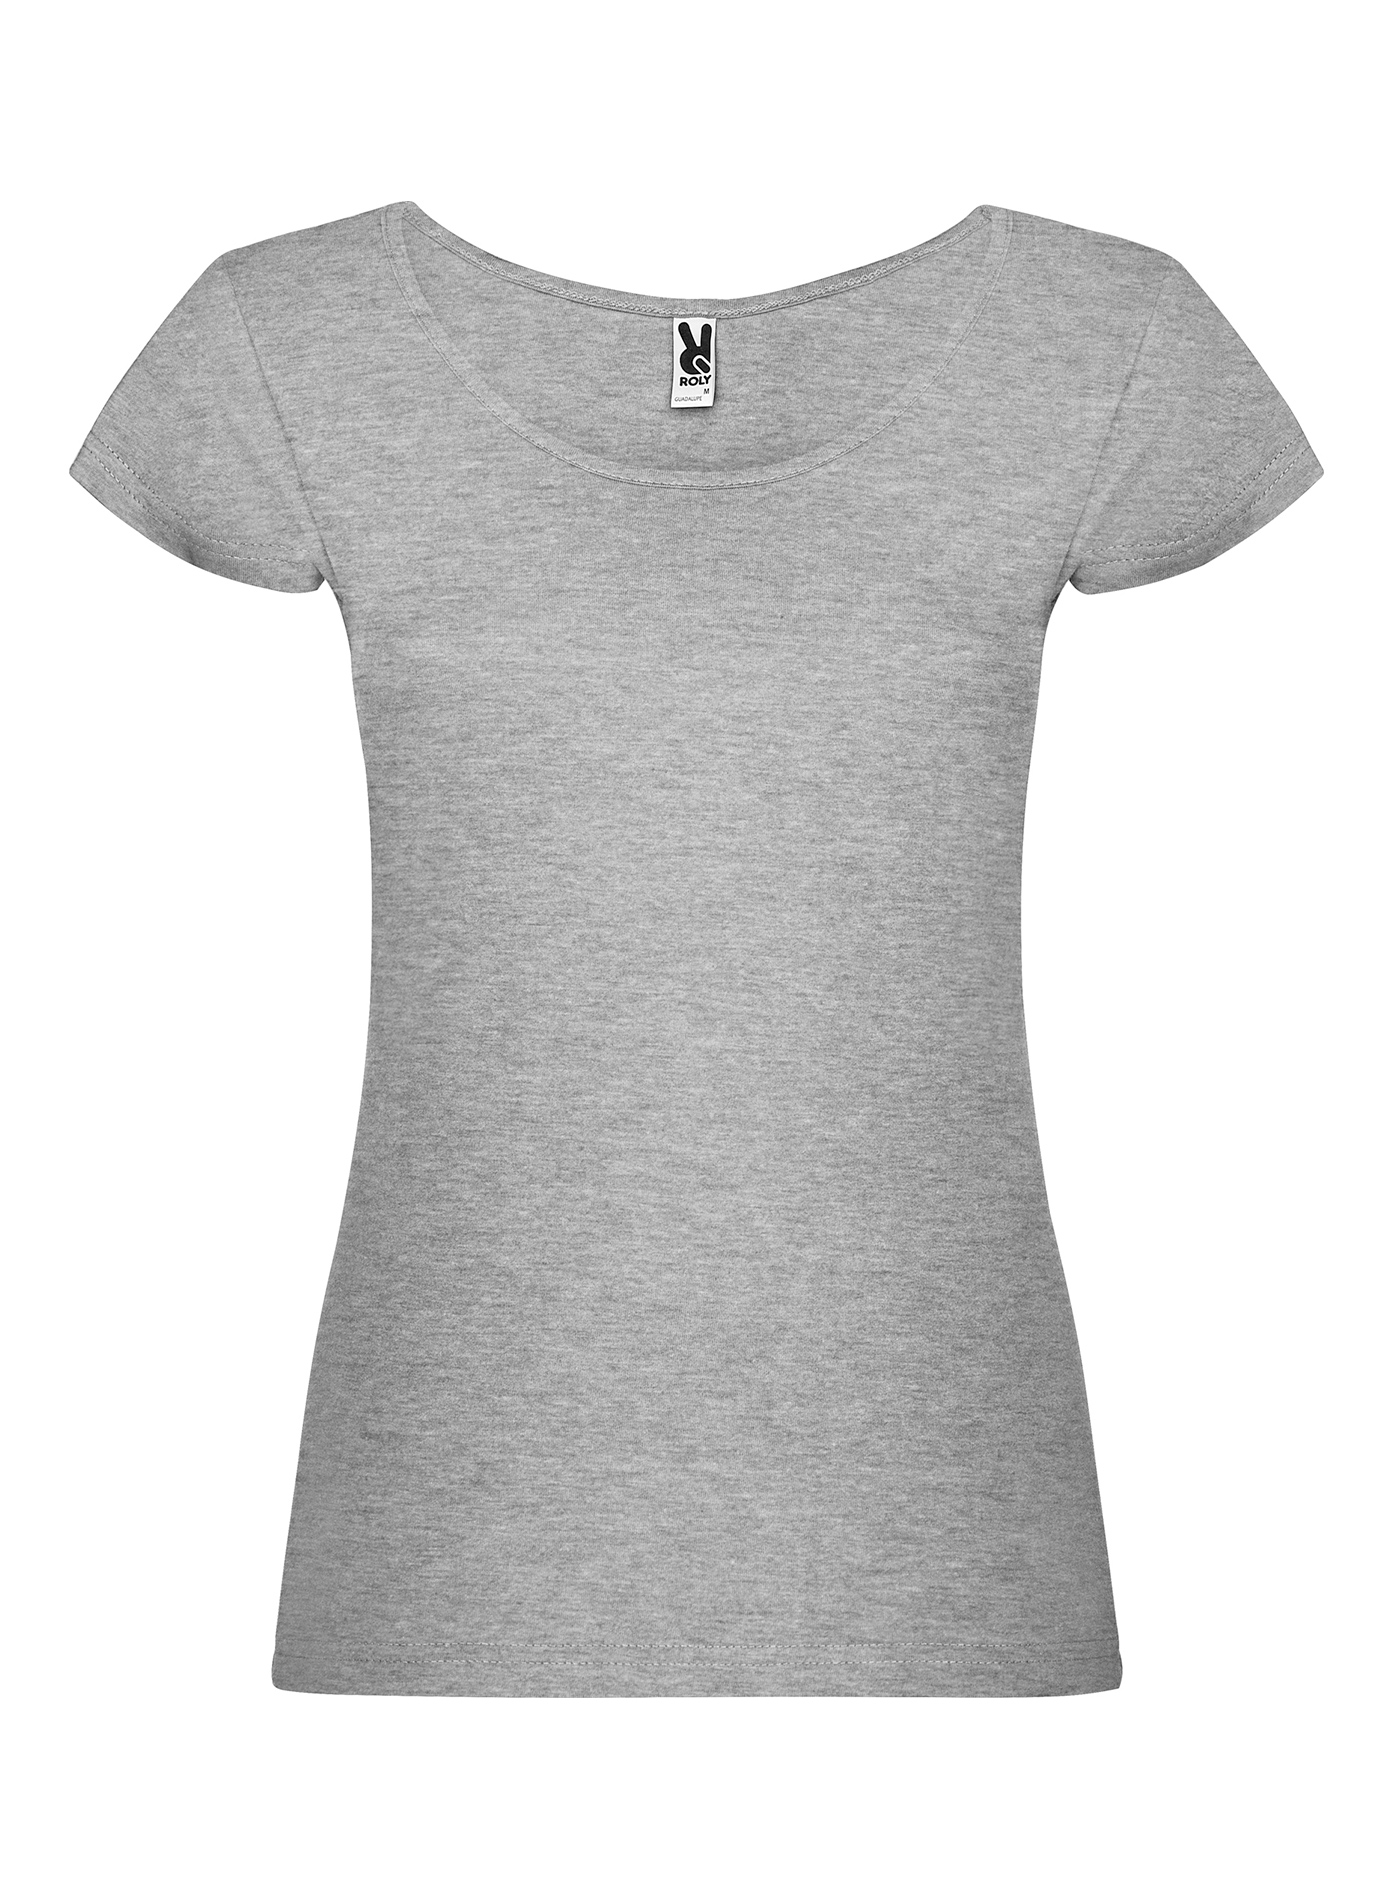 Dámské tričko Roly Guadalupe - Šedý melír XL